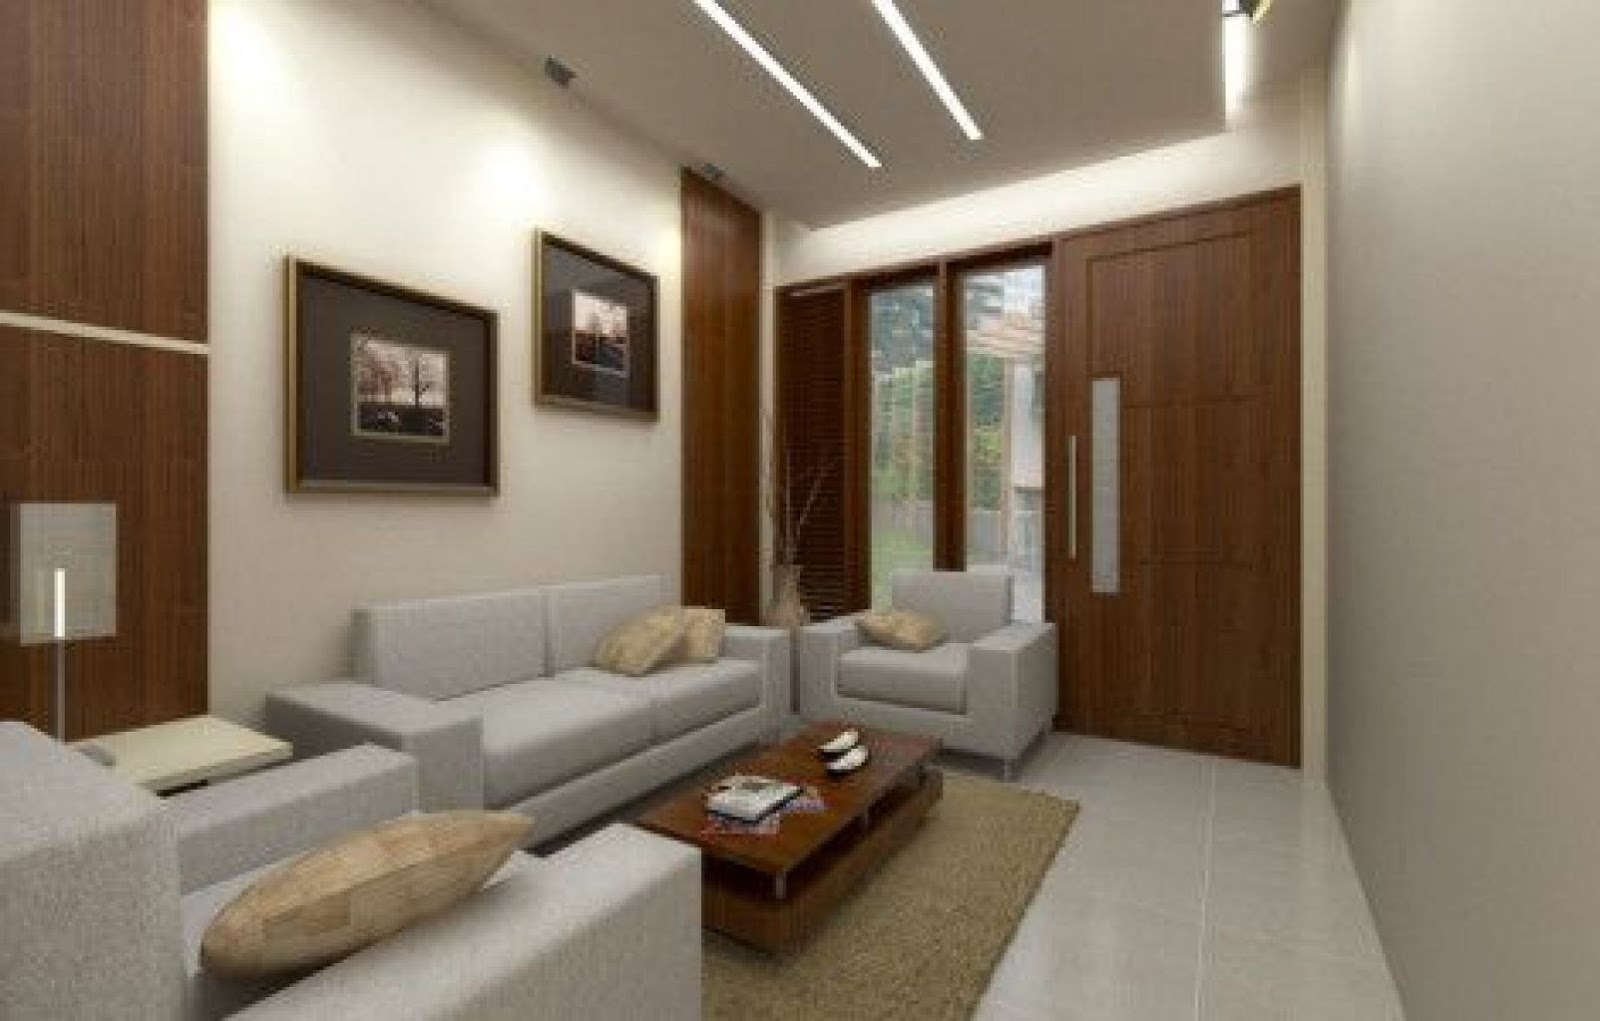 Desain Interior Ruang Tamu Terbaru 2019 Rumah Minimalis Type 36 Yang